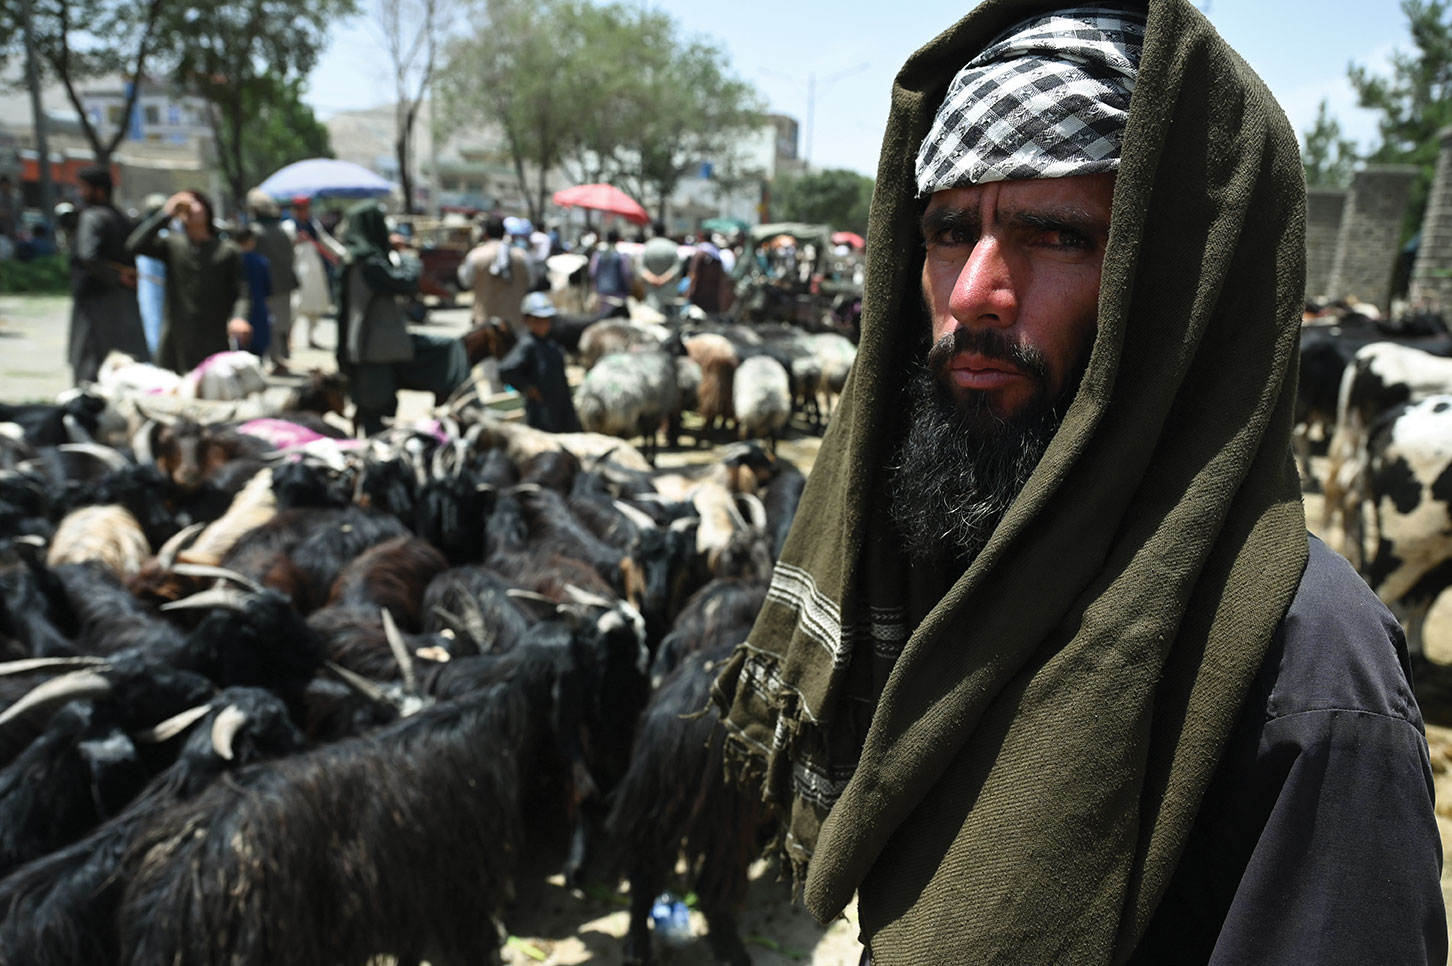 Afghanistan: des ambassades étrangères appellent les talibans à cesser leur offensive